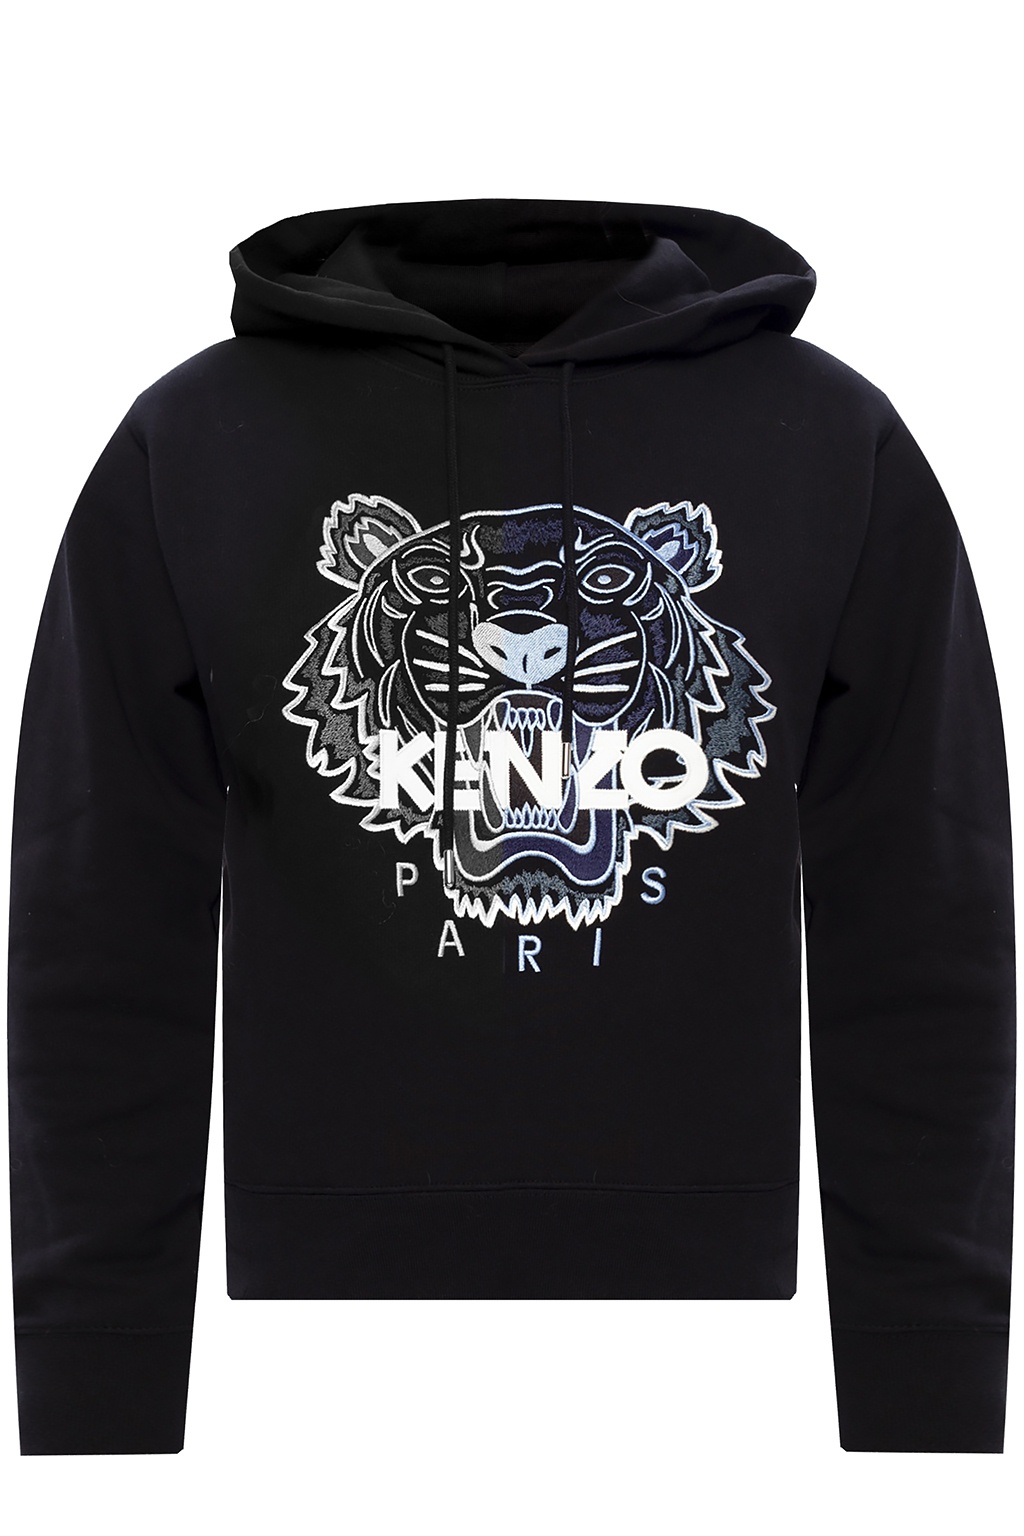 Kenzo floral embroidery hoodie - Black